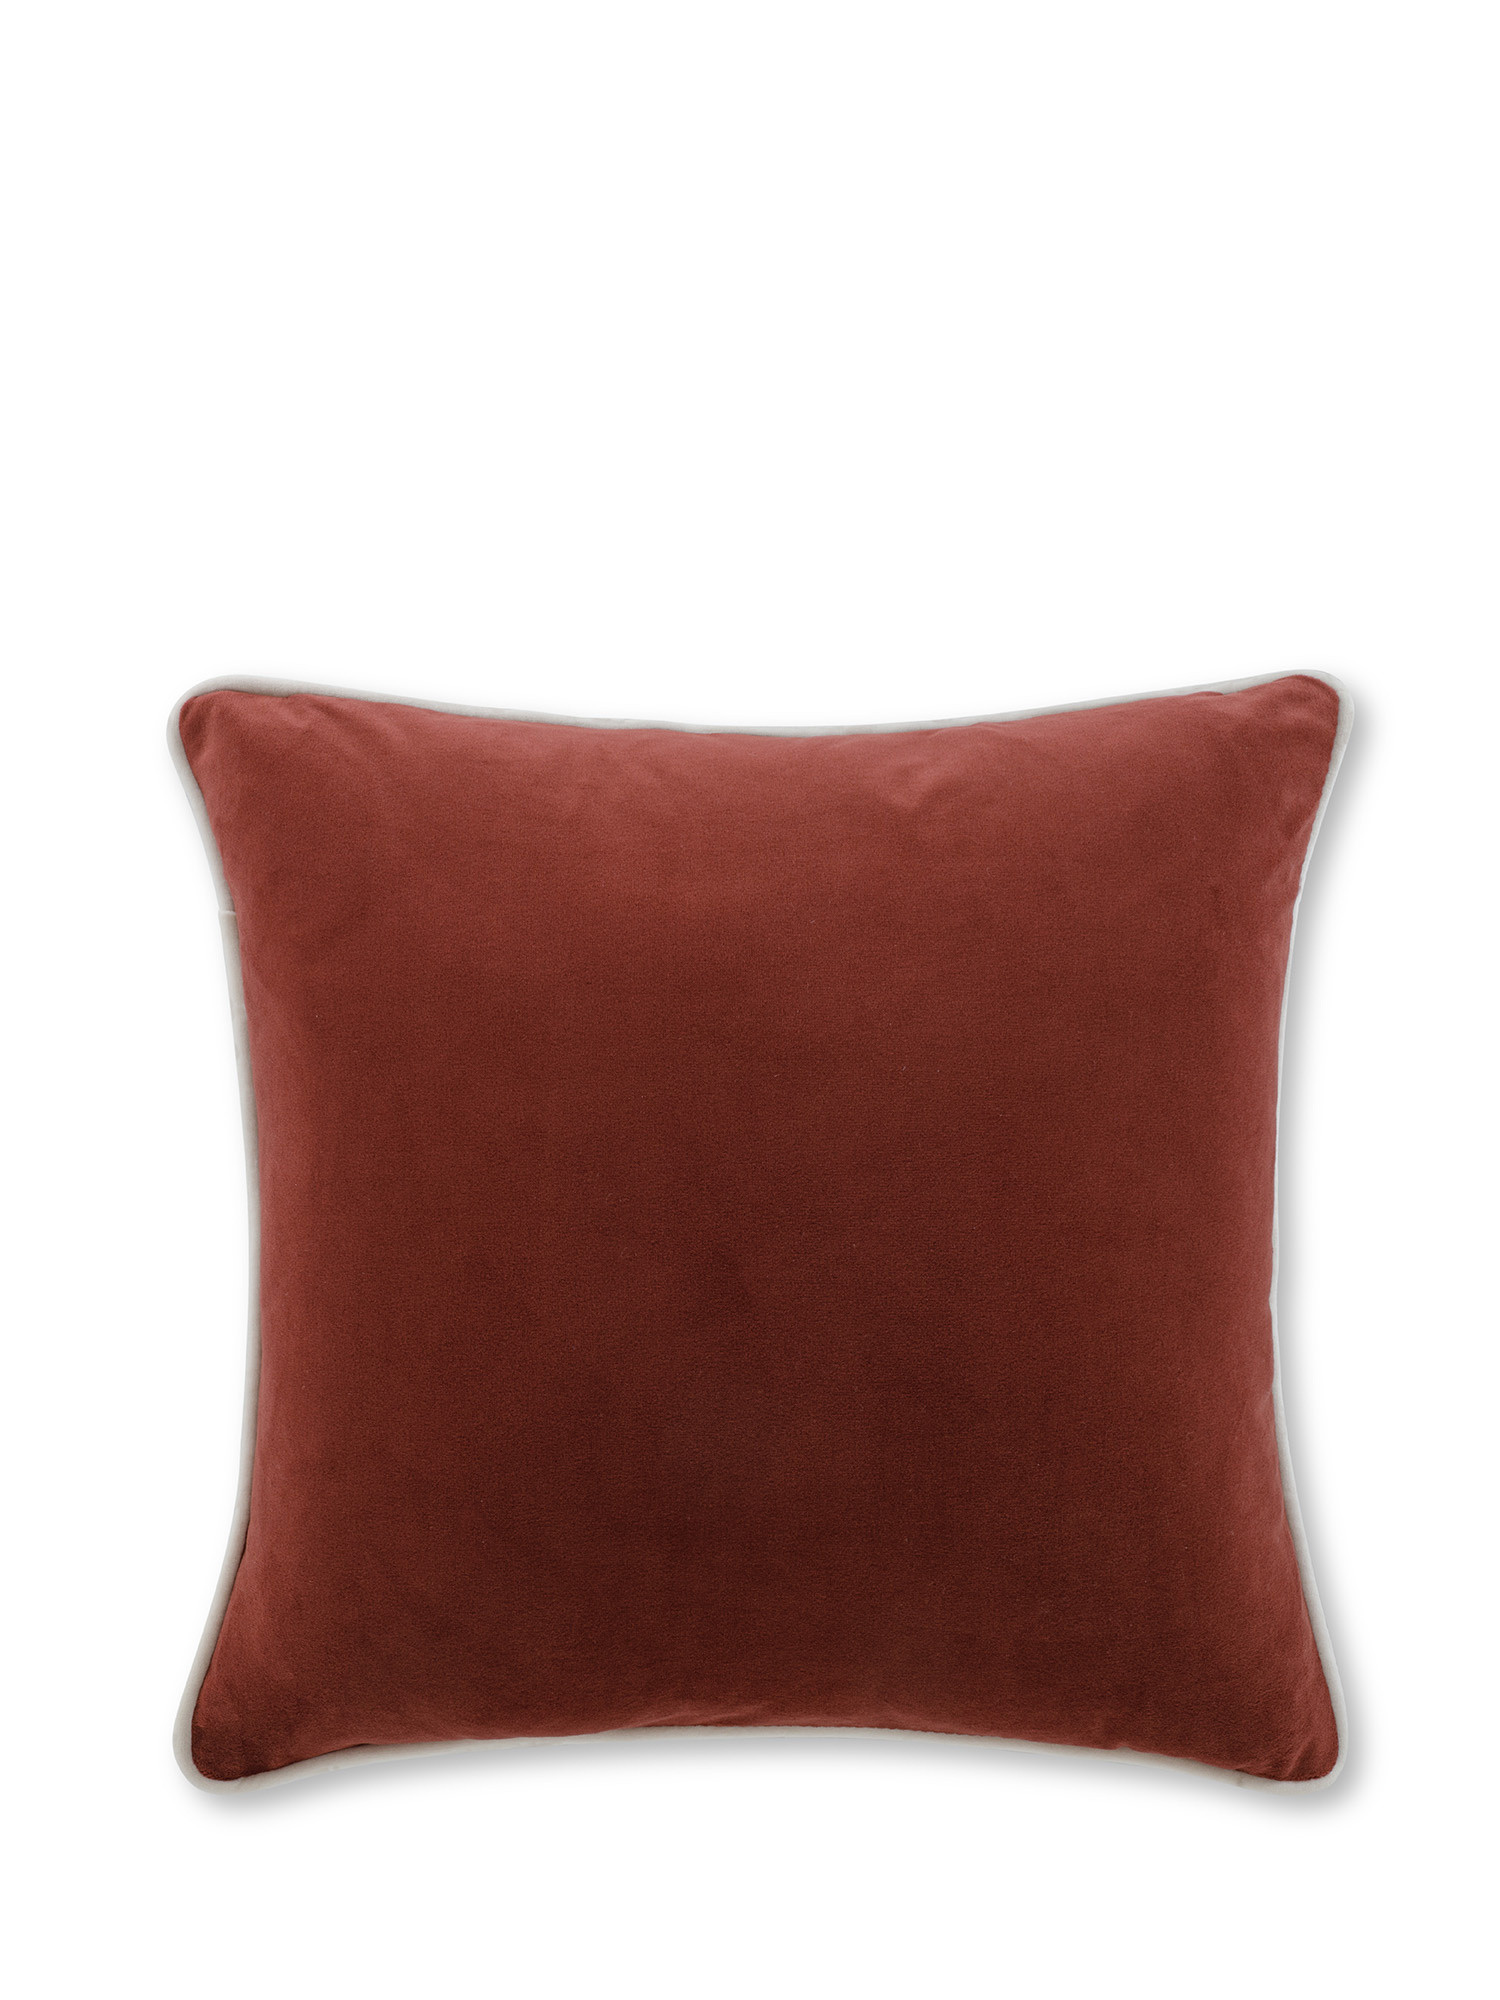 Cuscino in velluto con piping applicato sul bordo 45x45 cm, Marrone, large image number 0